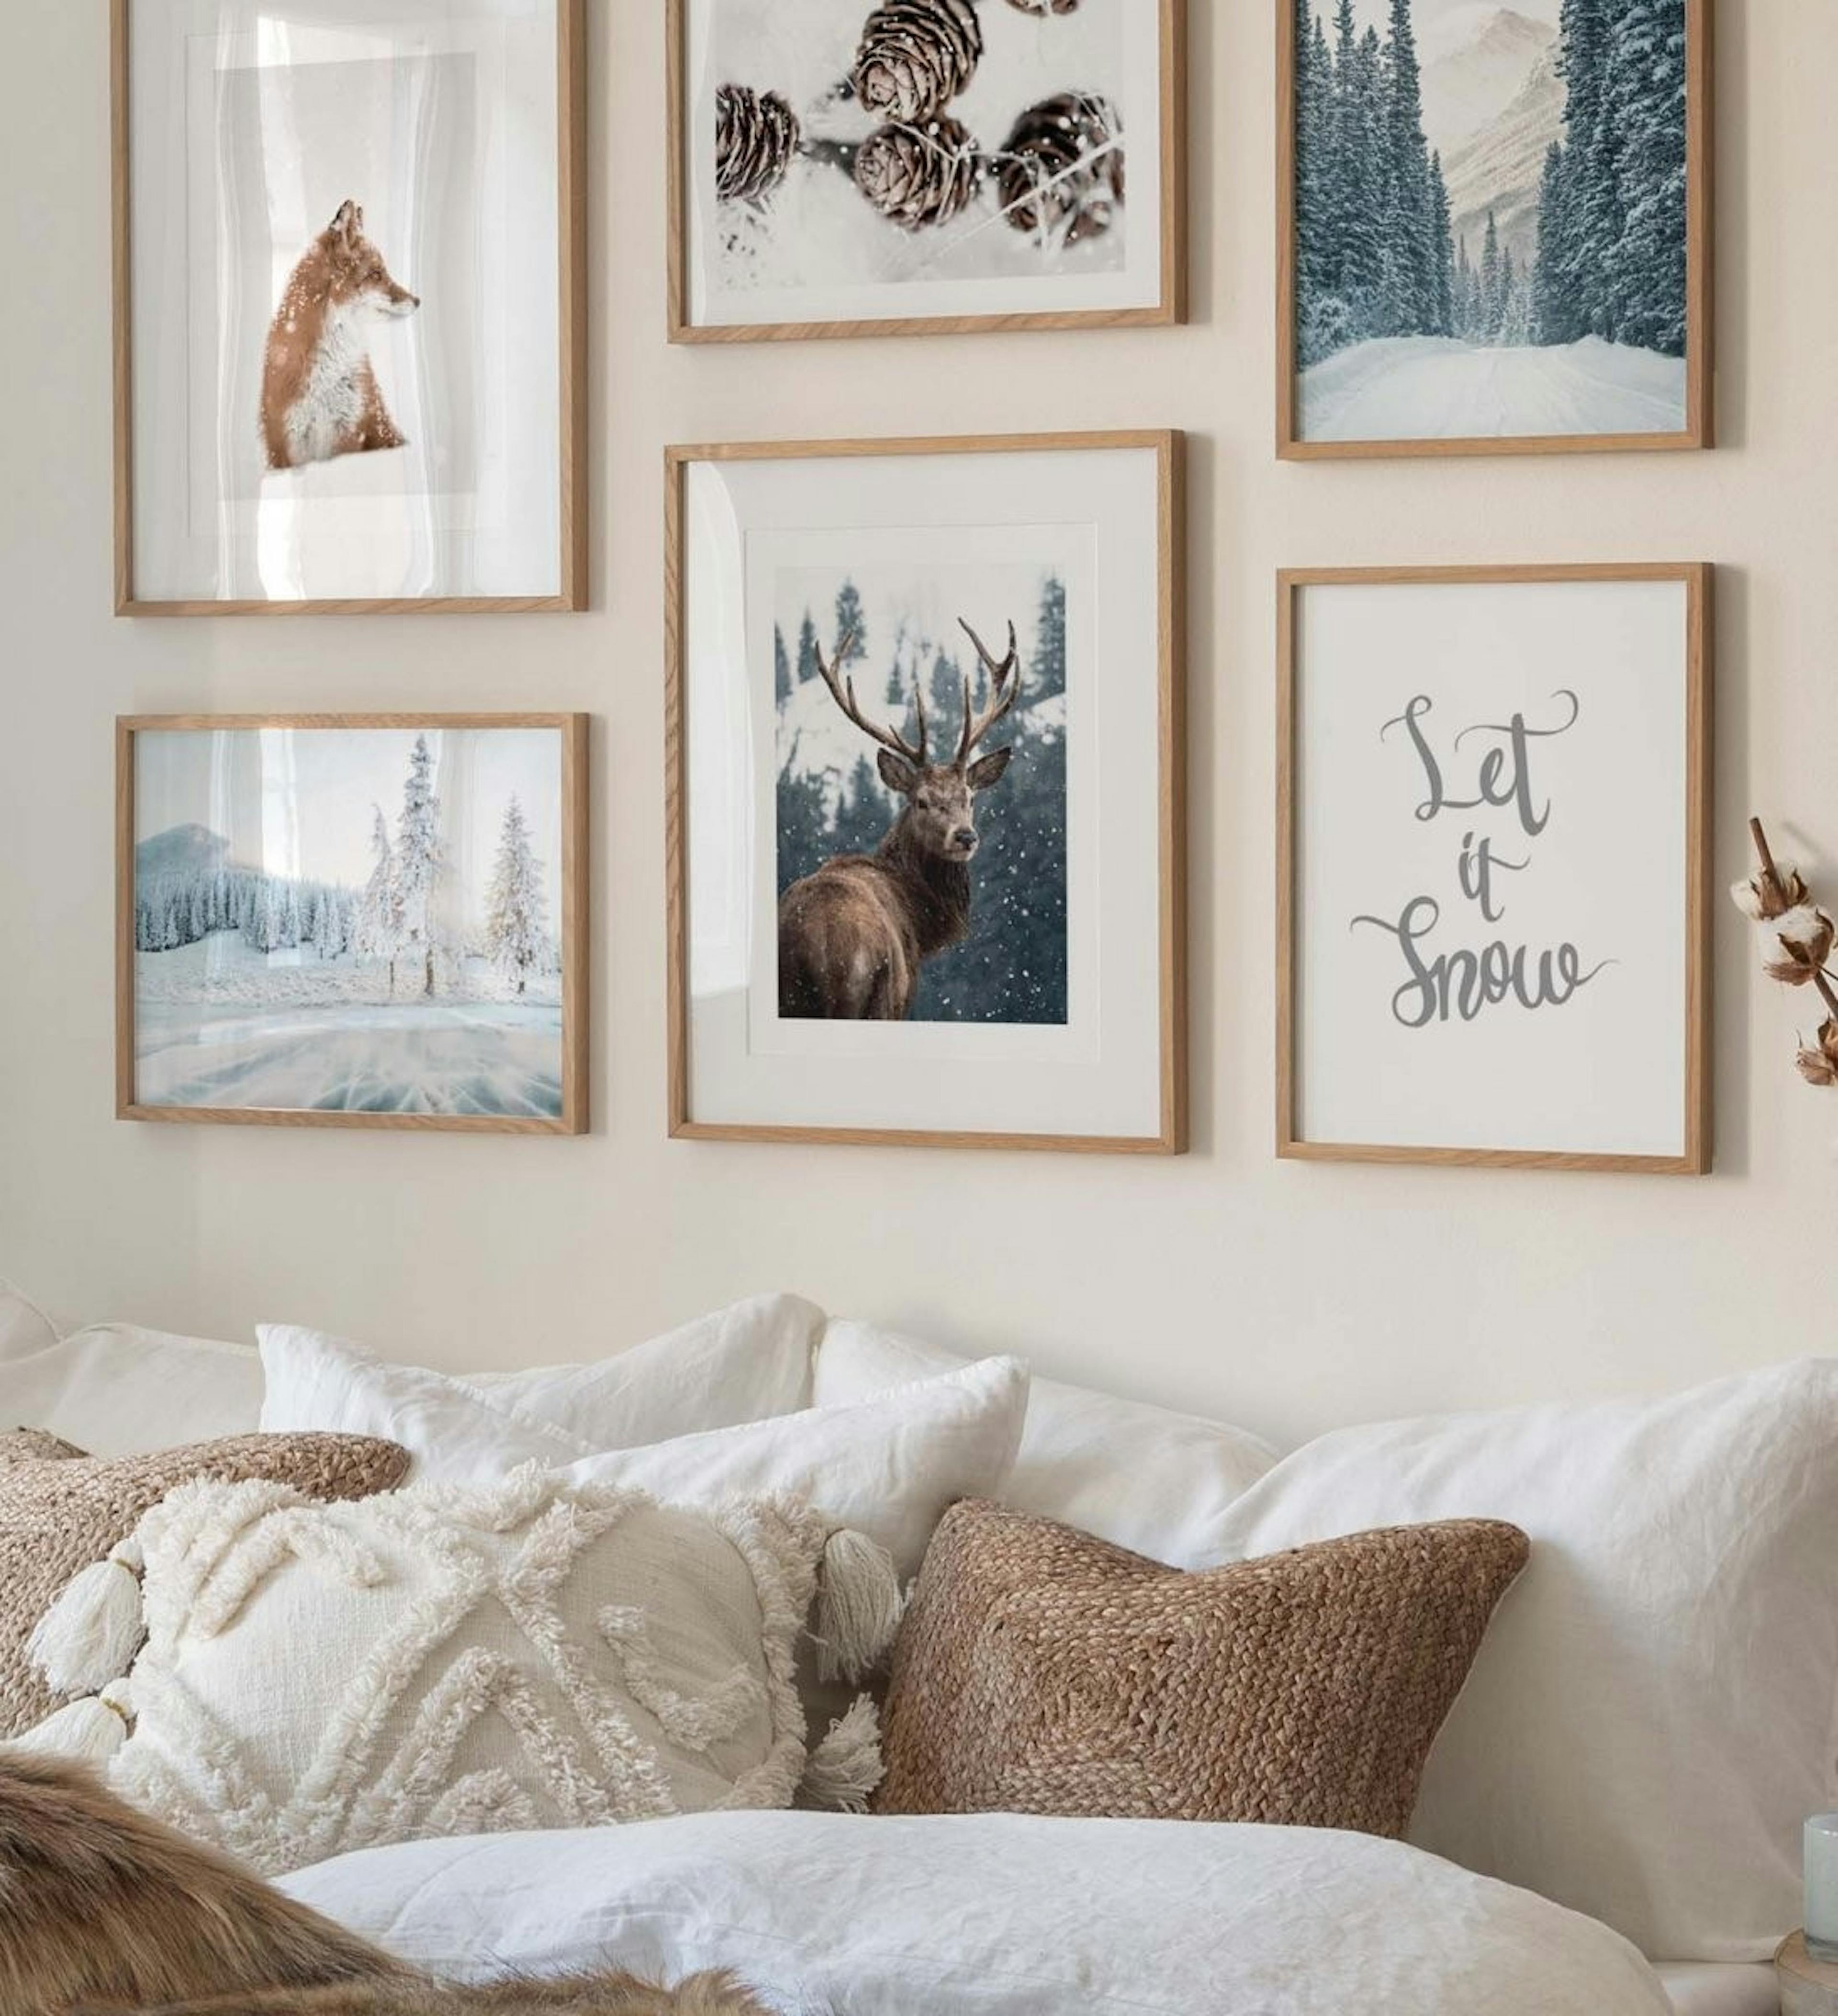 Galerijwand met winterposters van kegels, een vos en een edelhert gecombineerd met natuurwinterfoto's en quote prints met eikenh